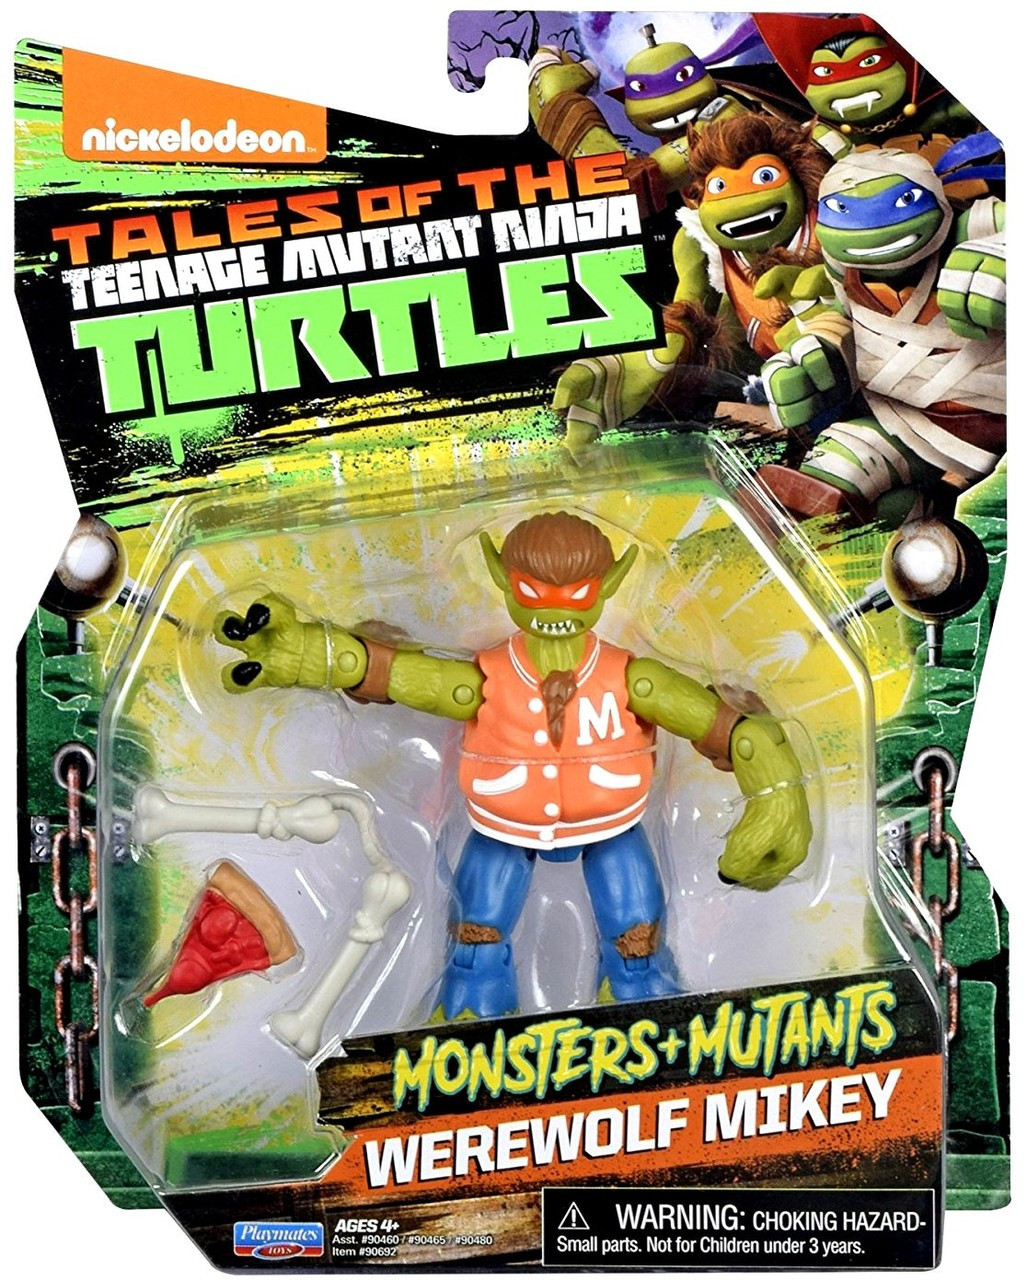 ninja turtle ninja turtle toys